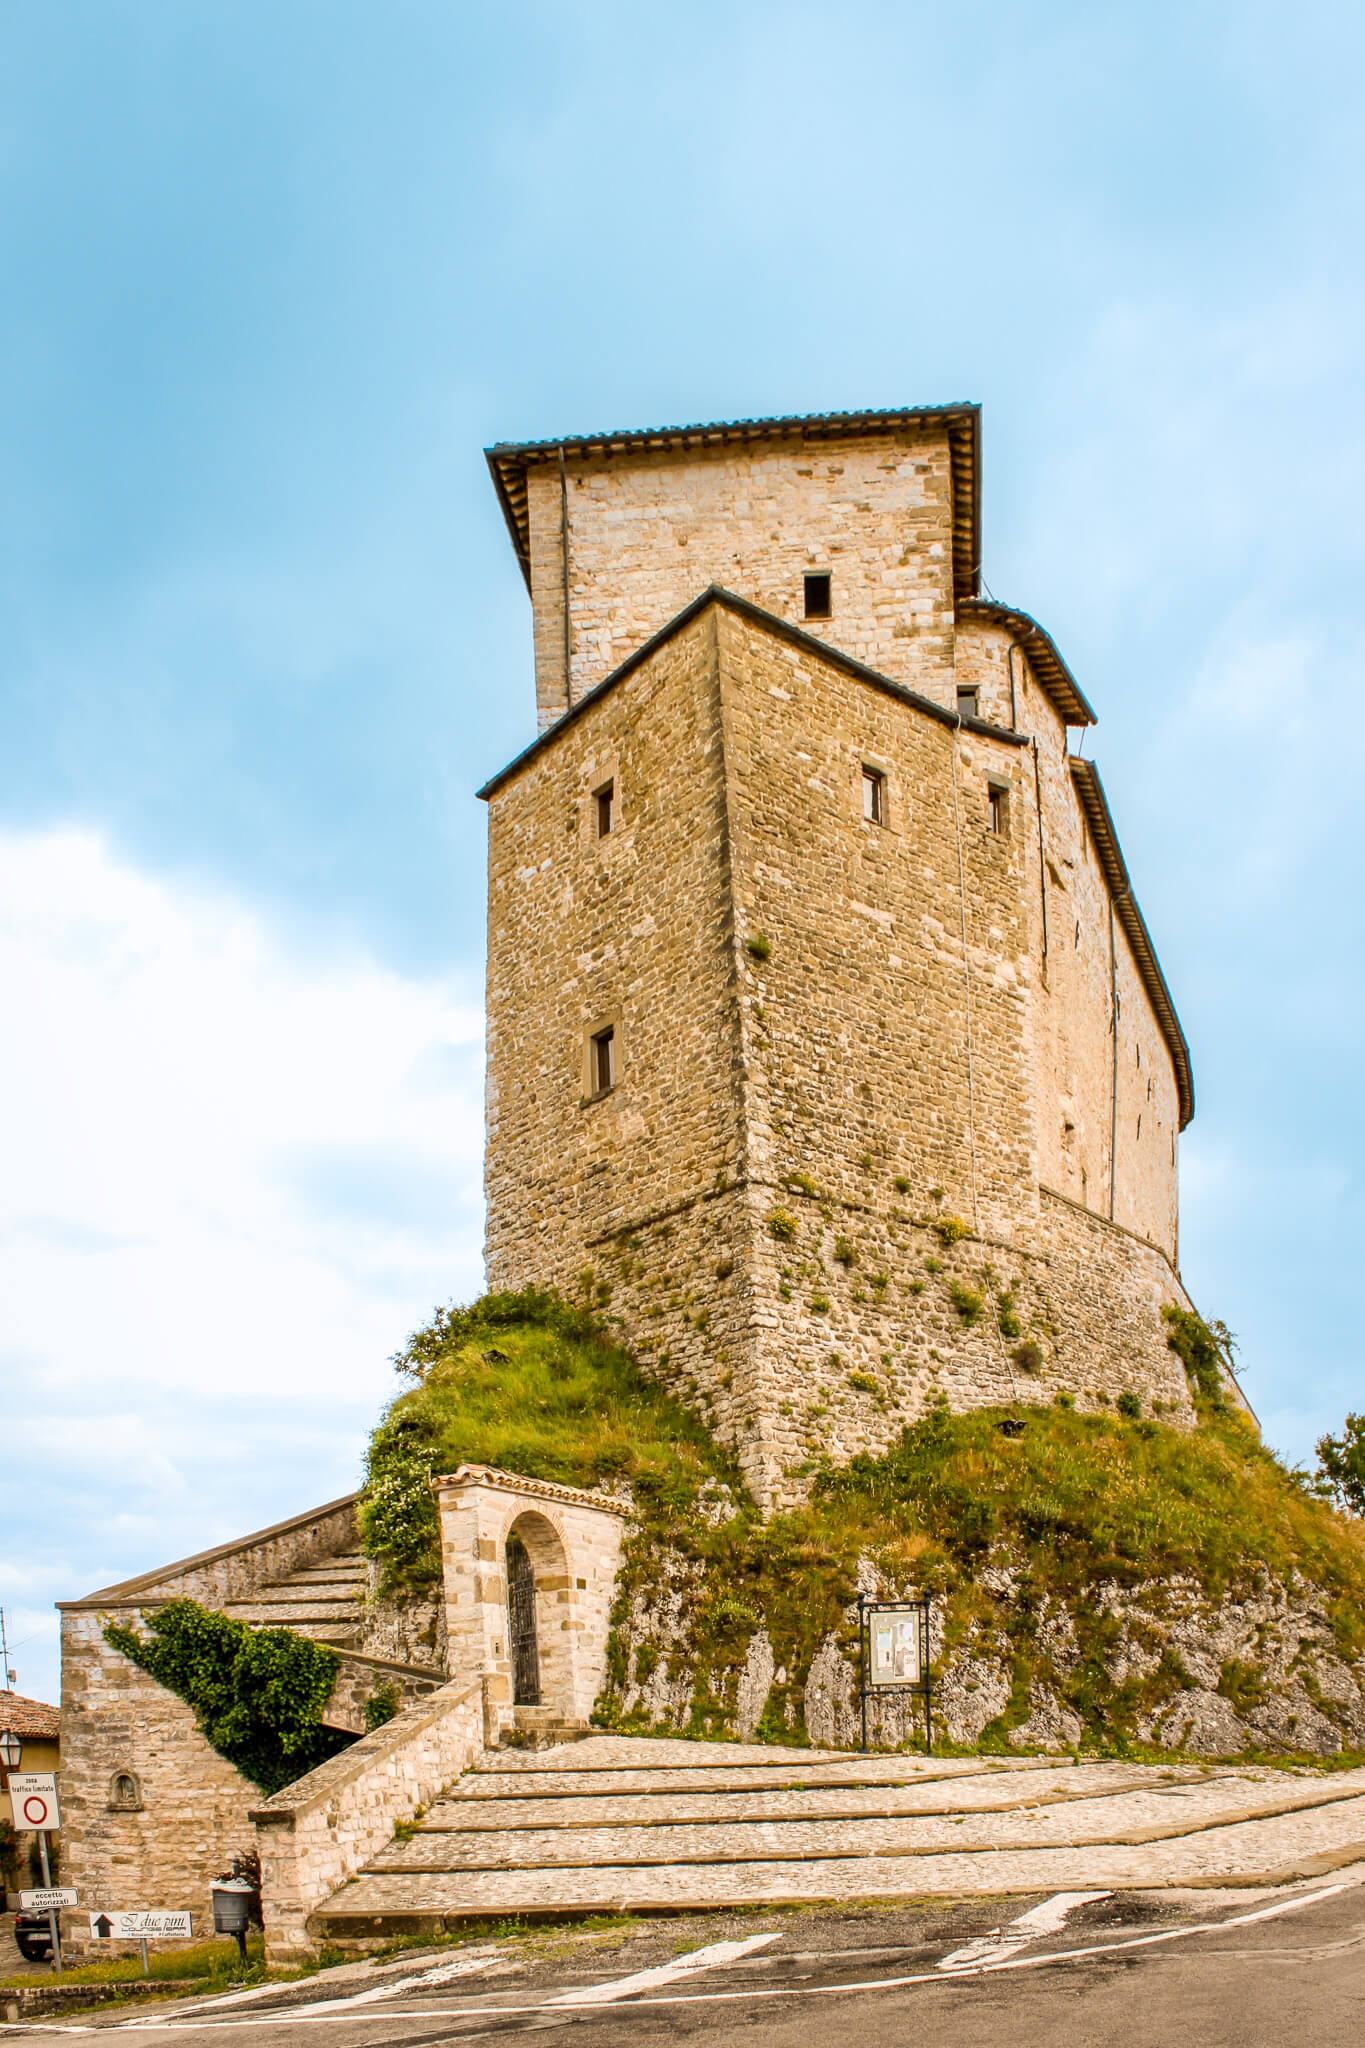 Castello della Porta in Frontone, Italy